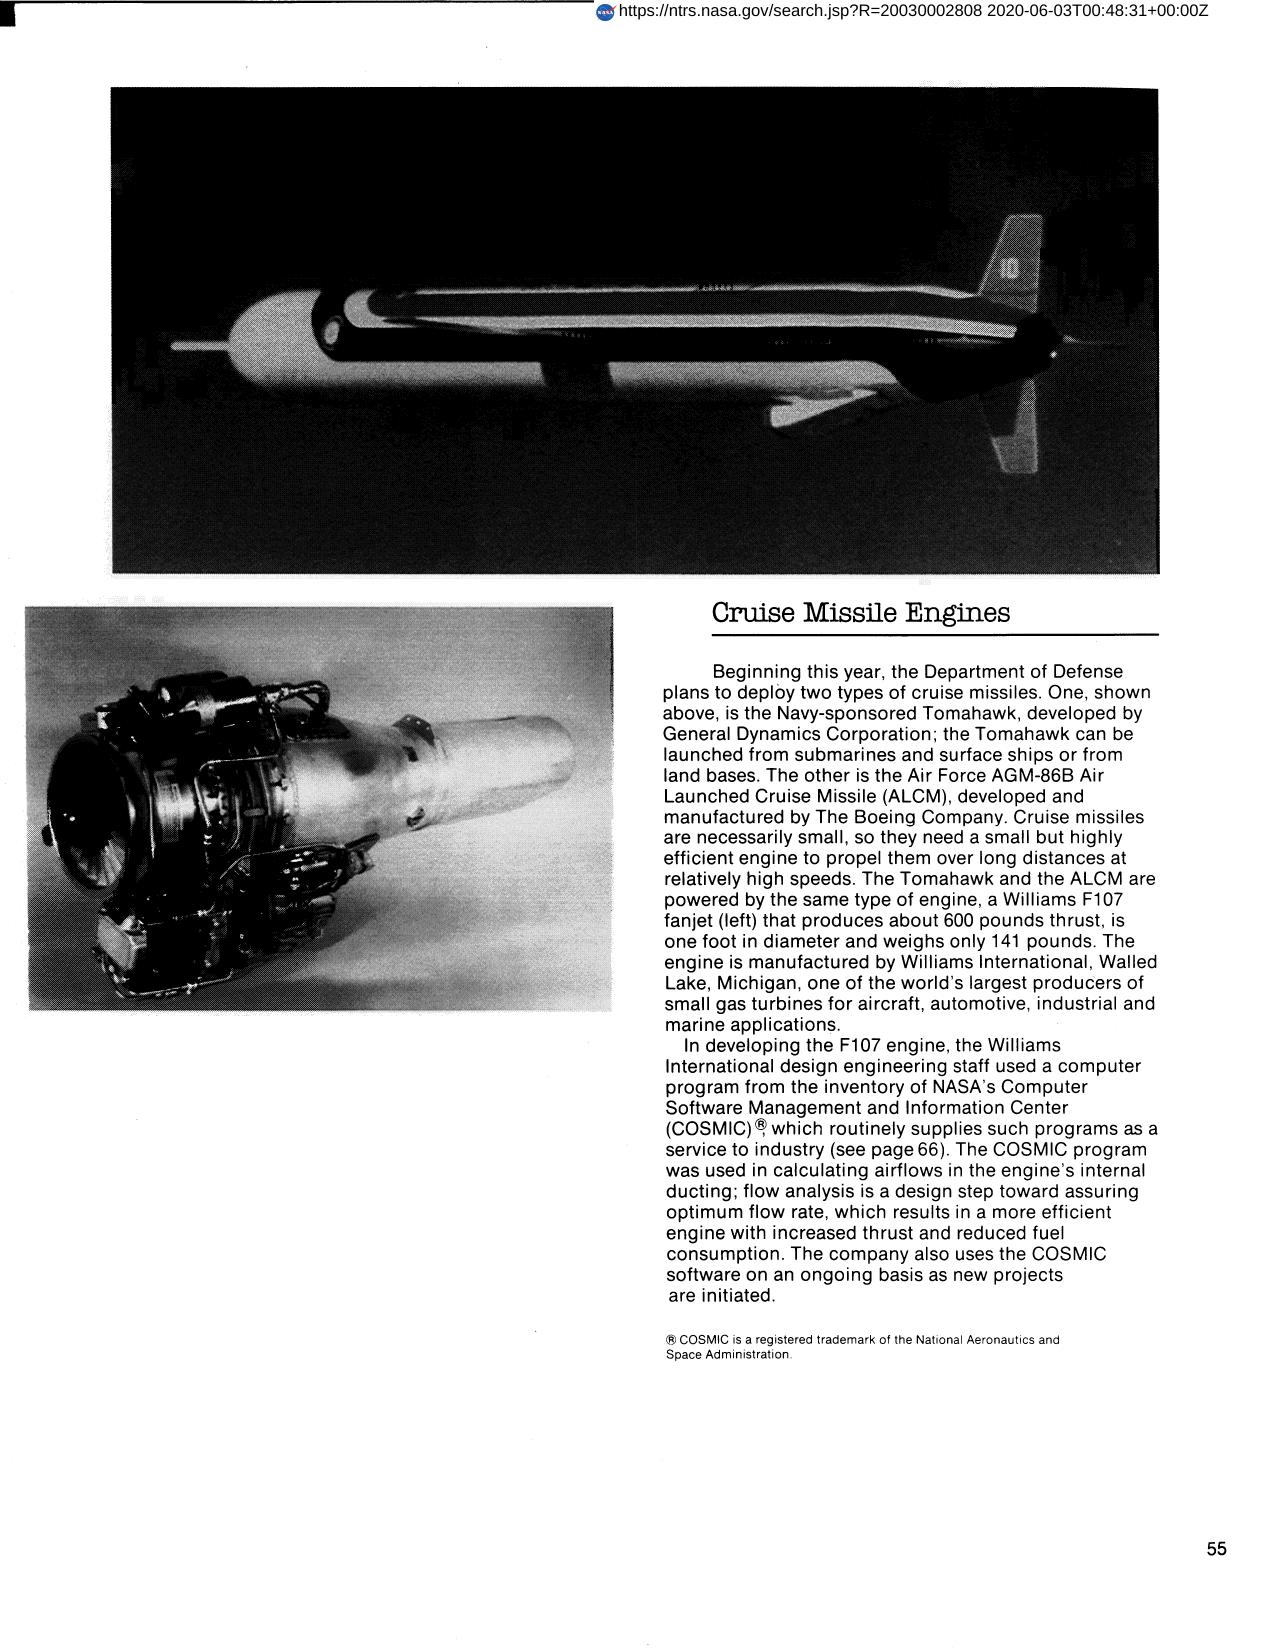 Cruise Missile Engines